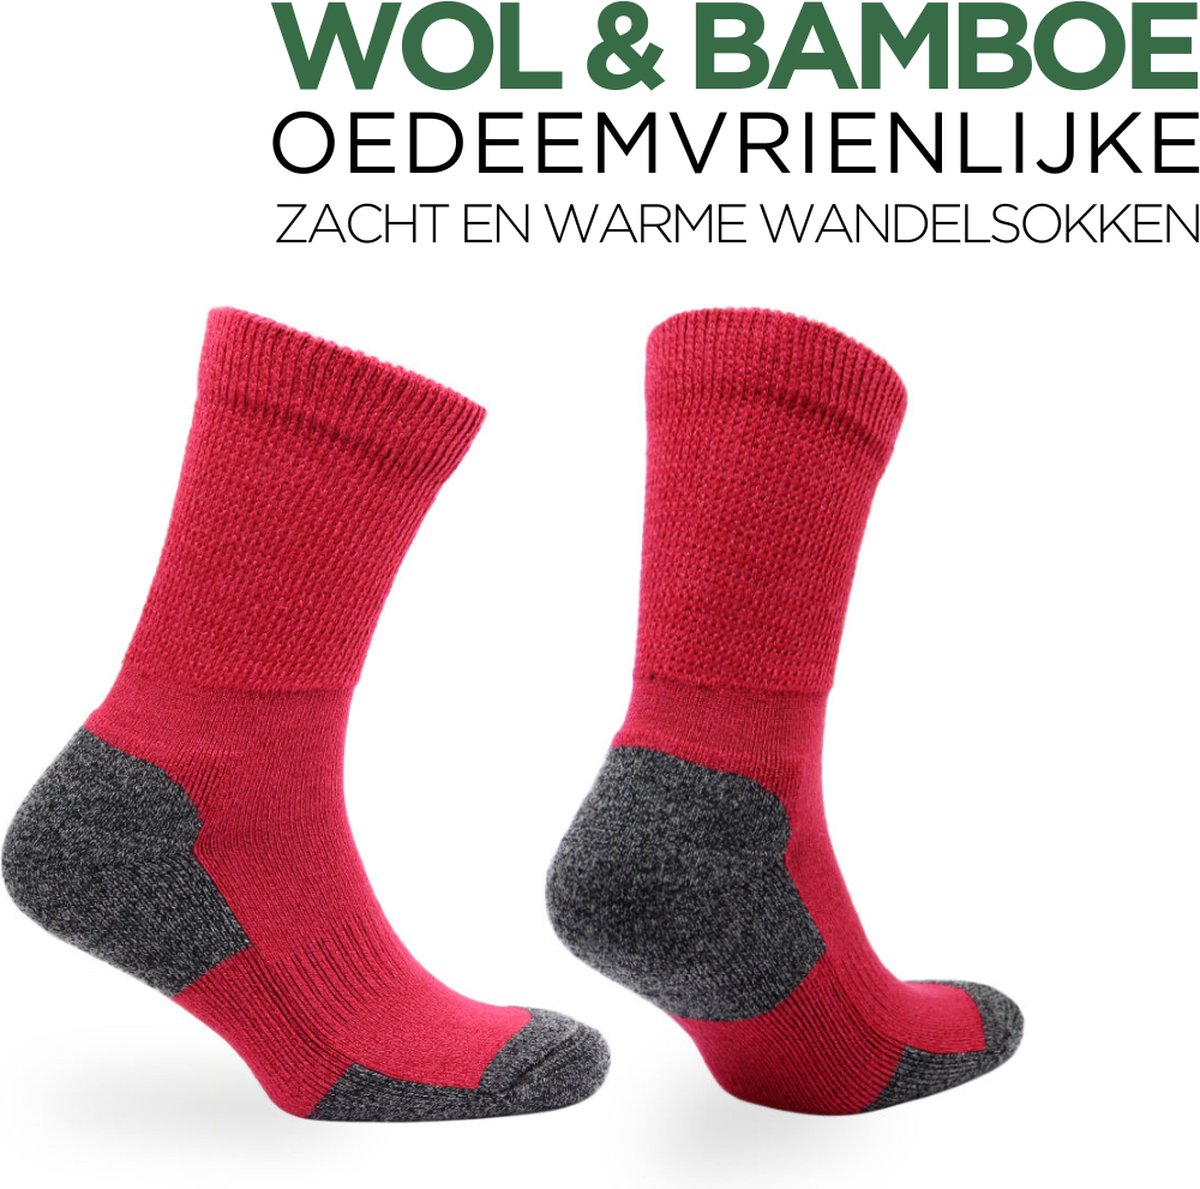 Norfolk - Merino wol en Bamboe mix Wandelsokken - Diabetes en Oedeemvriendelijke - Outdoor Zacht en Warme Sokken Heren met Demping - Merino wol sokken - Rood - Maat 43-46 - Alfie